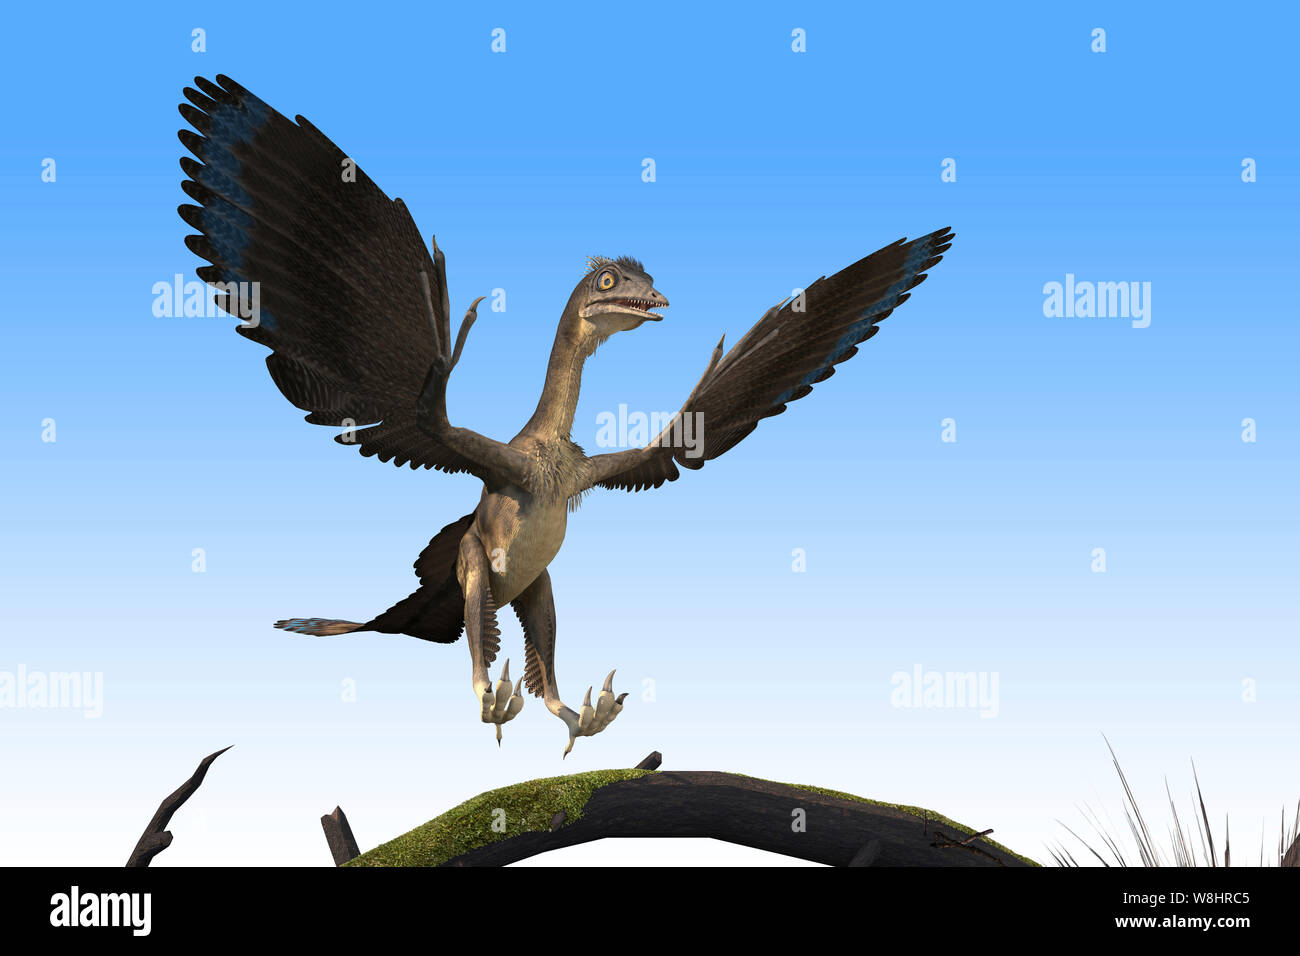 Dinosaure archéoptéryx, illustration. Ces oiseaux comme les dinosaures ont vécu il y a environ 150 millions d'années durant le Jurassique tardif. Banque D'Images